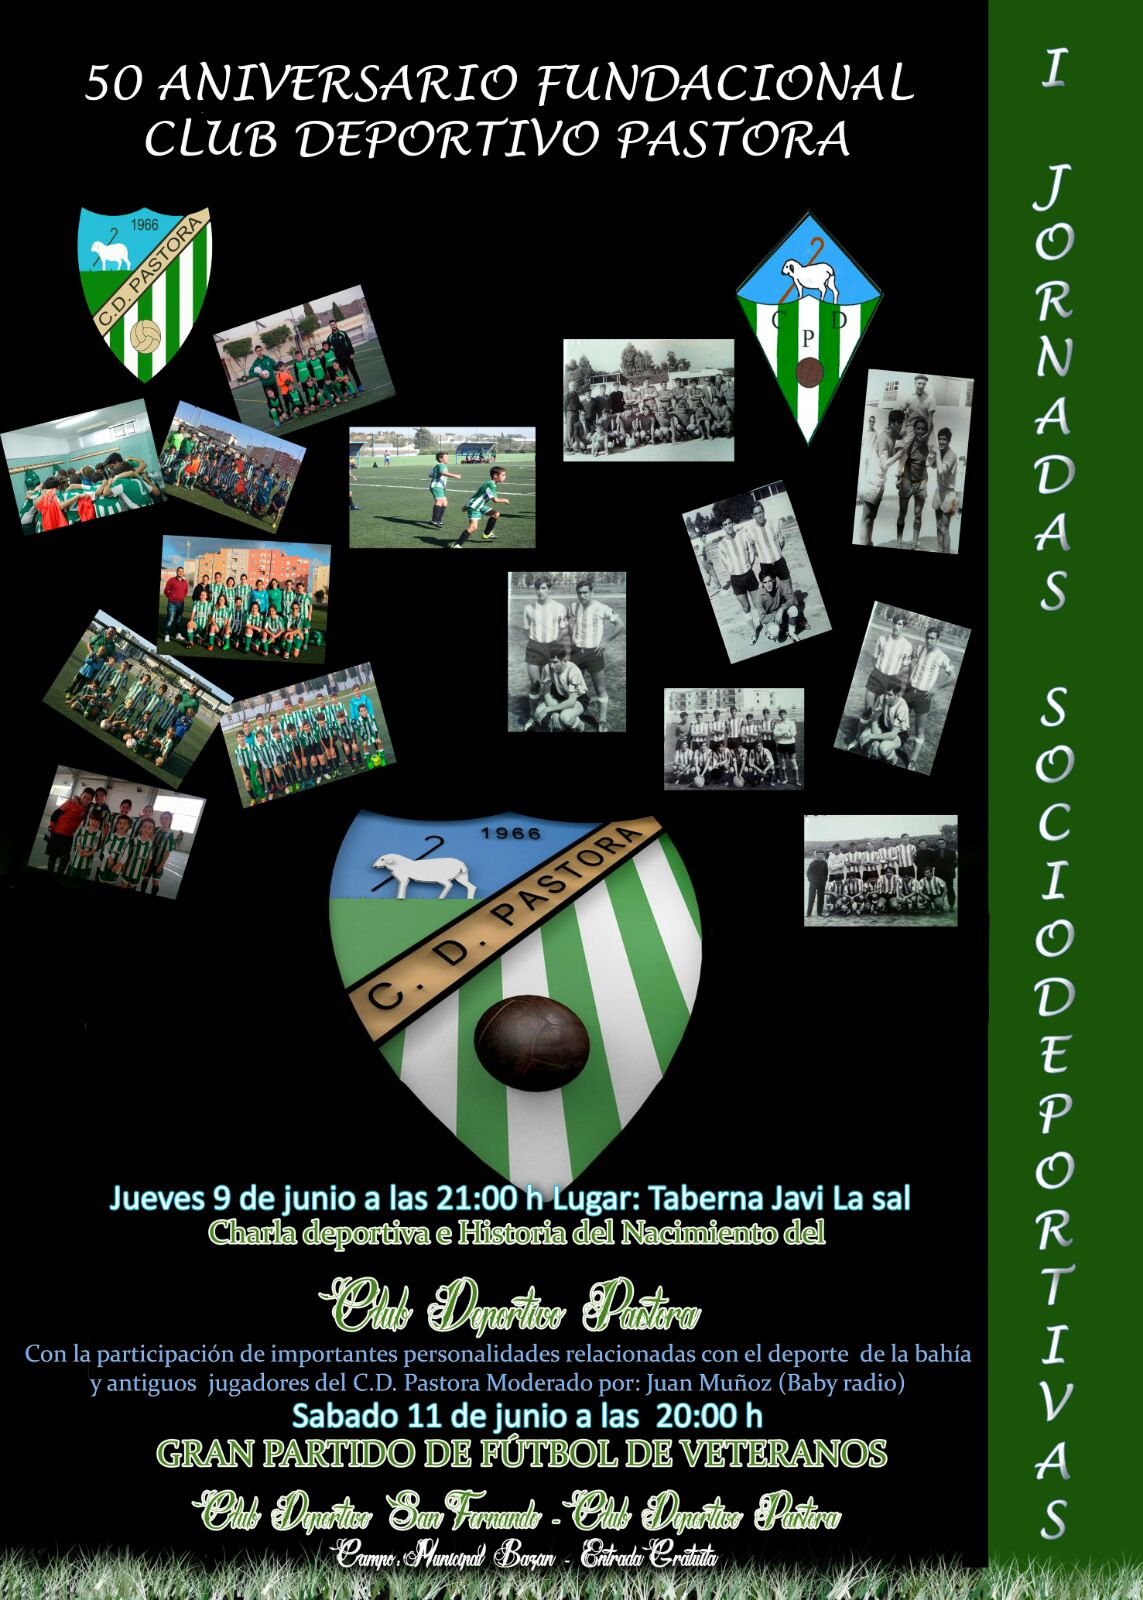 50 Aniversario Fundacional Club Deportivo Pastora.